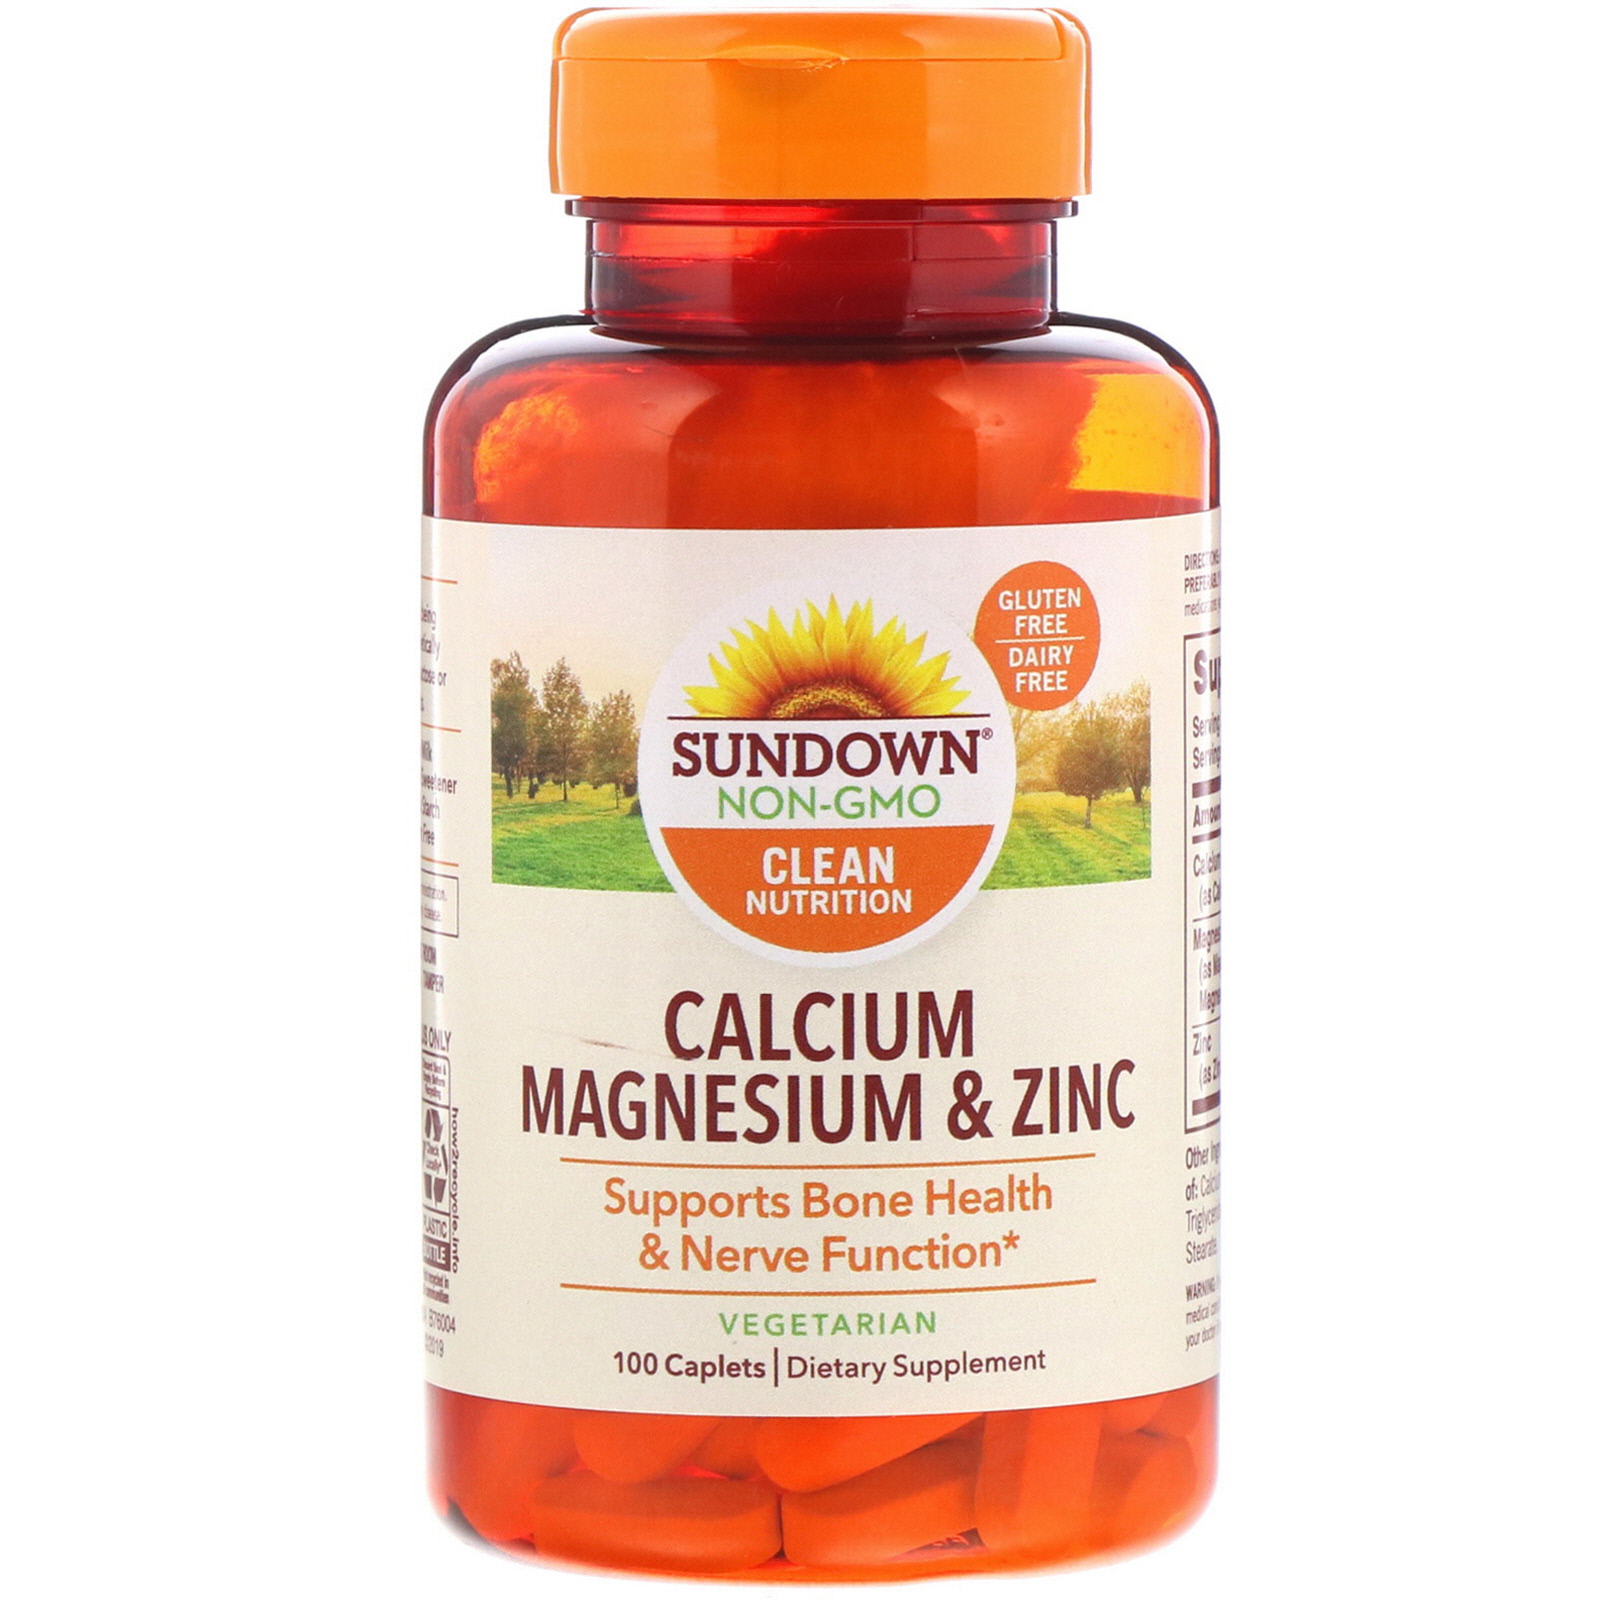 Calcium Magnesium & Zinc, 100 Caplets 2